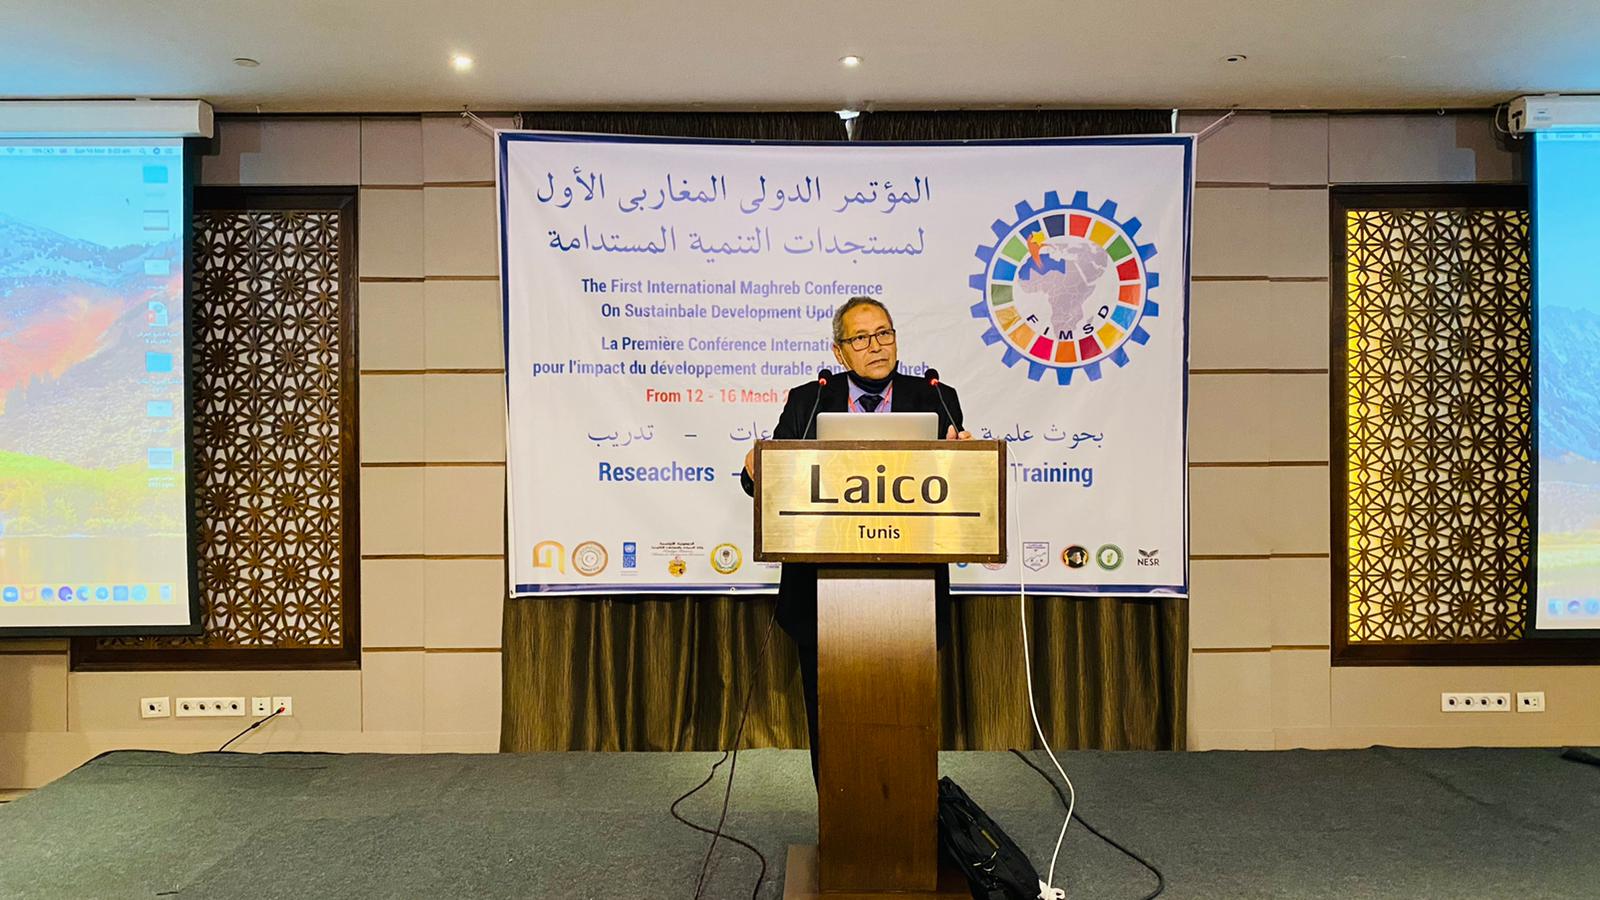 المؤتمر الدولي المغاربي لمستجدات التنمية المستدامة (LY- v) يفتتح اعماله بالعاصمة التونسية يوم 12 مارس 2021ميلادي. 